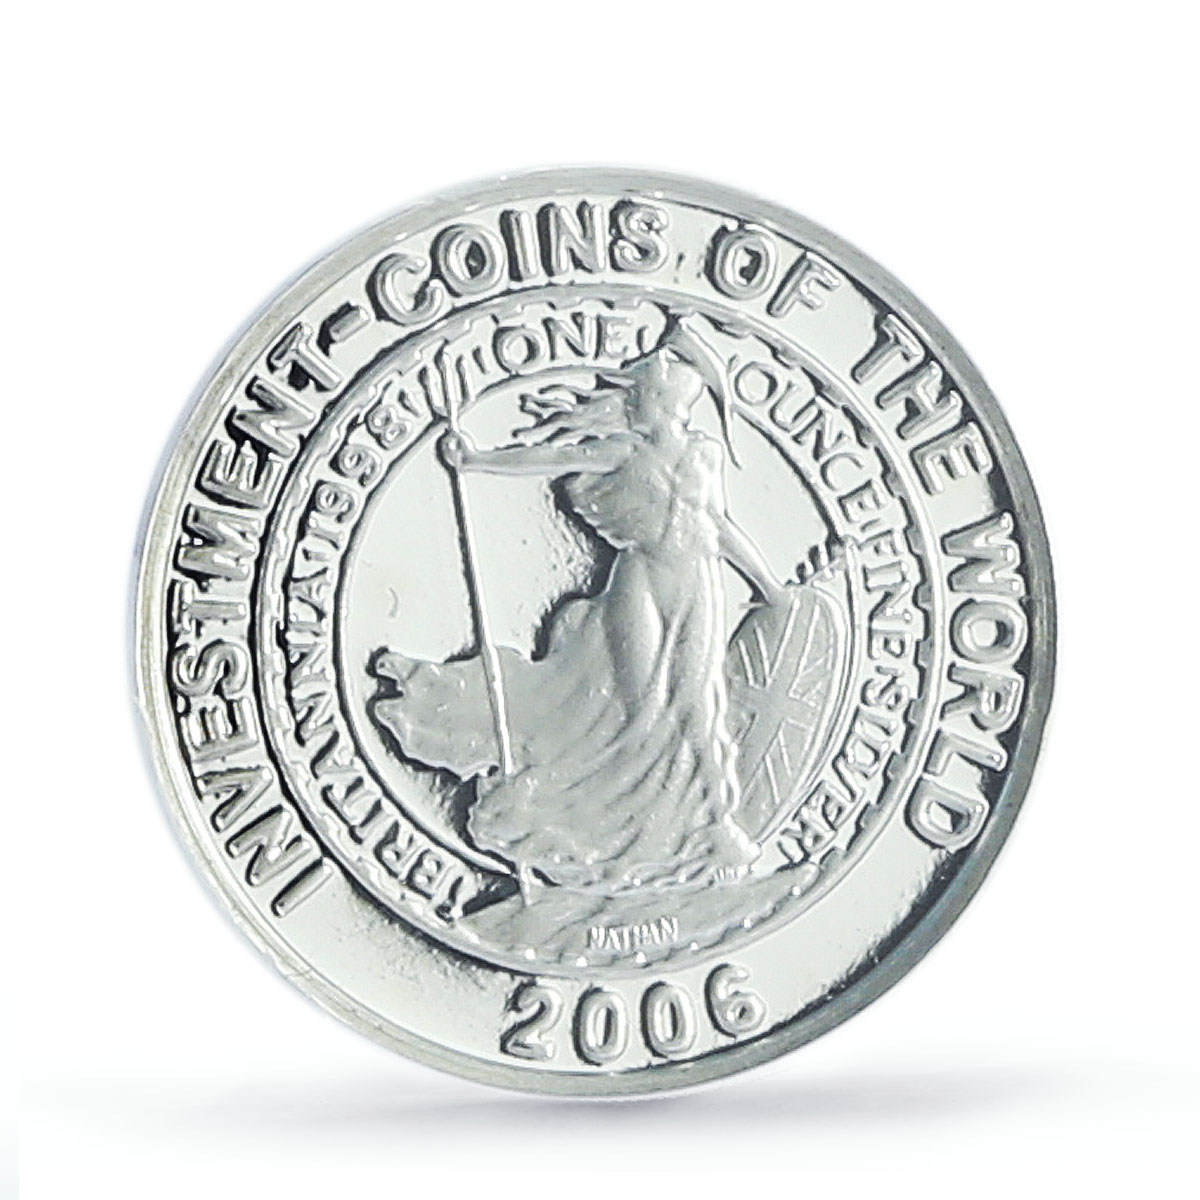 Malawi 5 kwacha World Investment Coins Britannia PR69 PCGS silver coin 2006